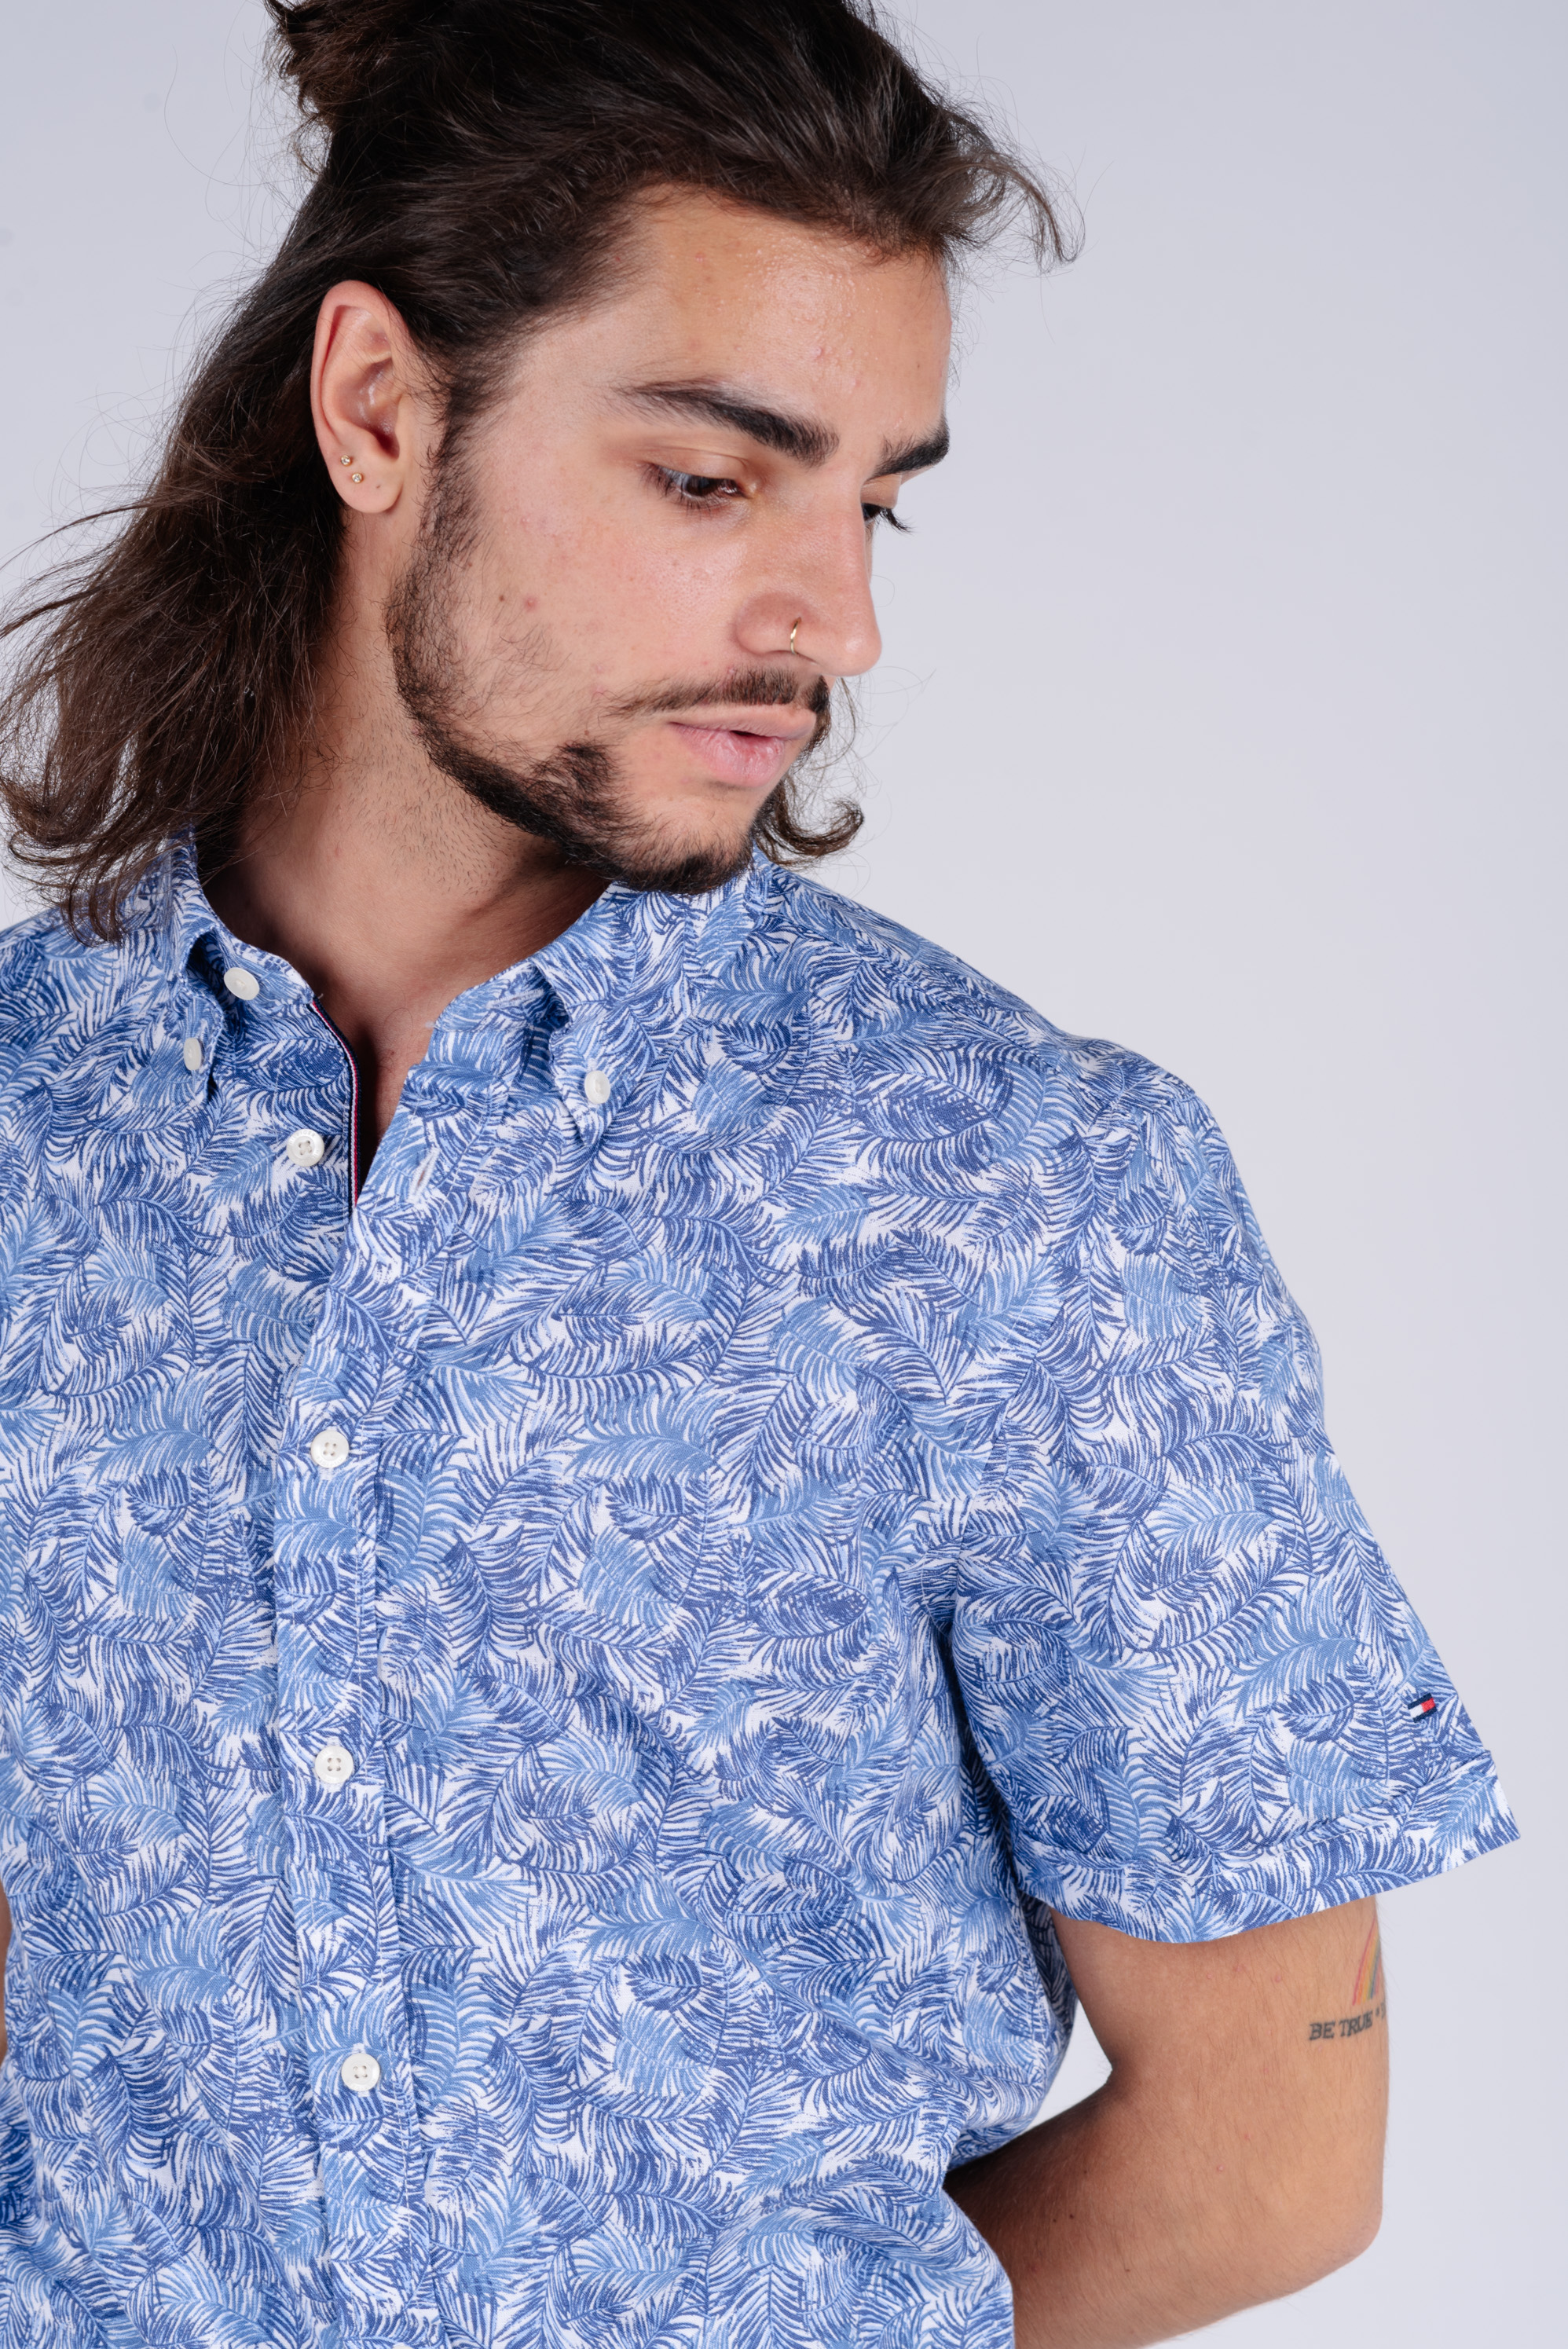 Tommy Hilfiger Shirt - SLIM CO/LI LEAF PRINT SHIRT S/S patterned